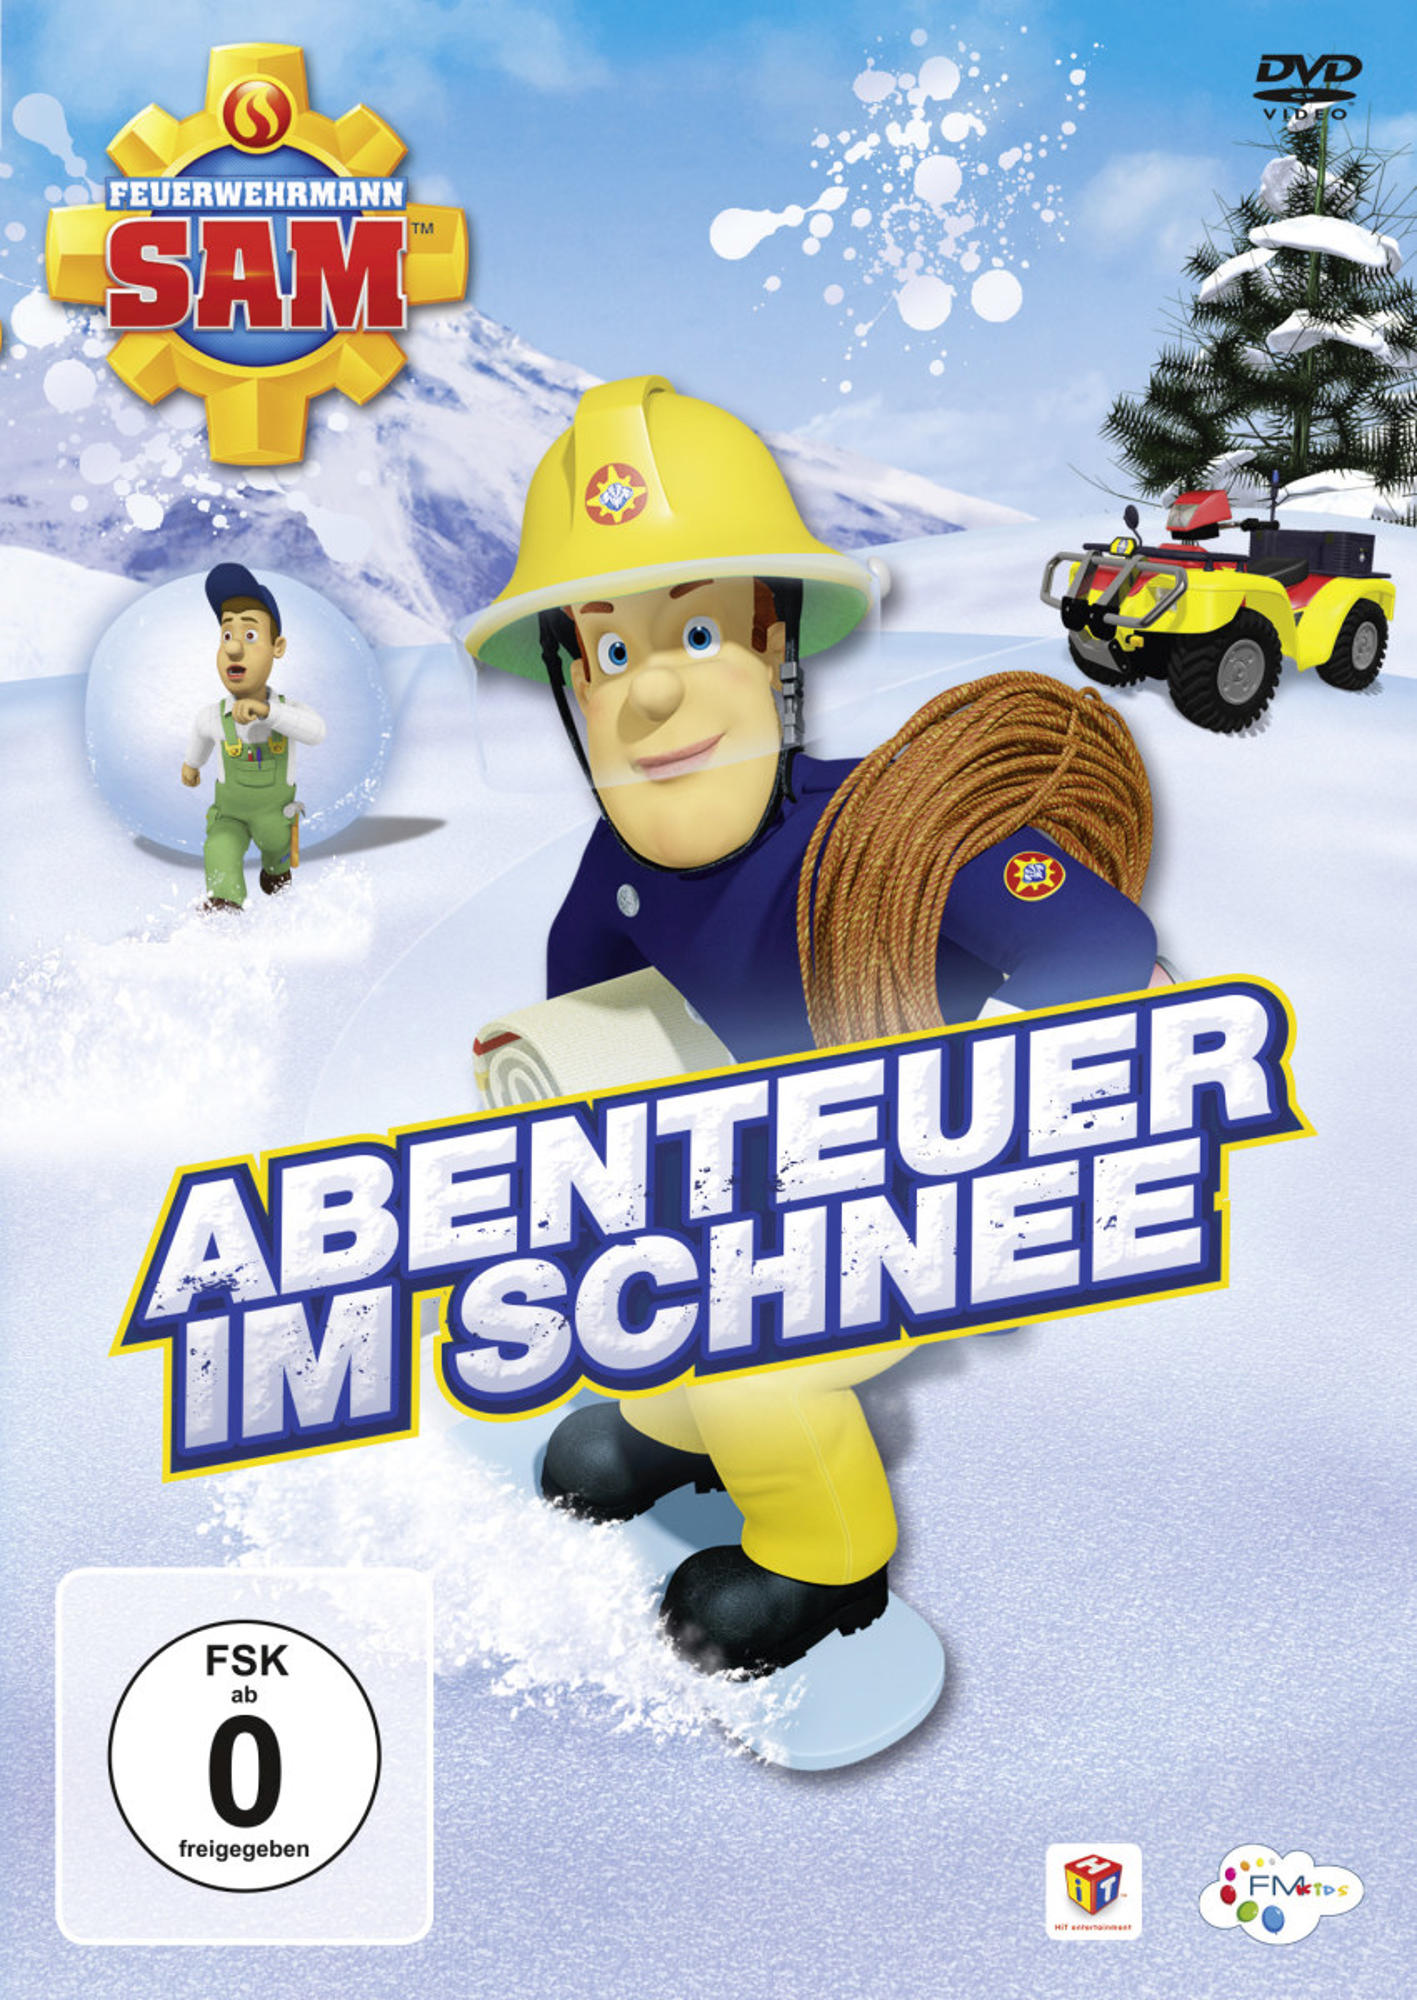 8.4 - Schnee Staffel Feuerwehrmann Sam Abenteuer DVD - im